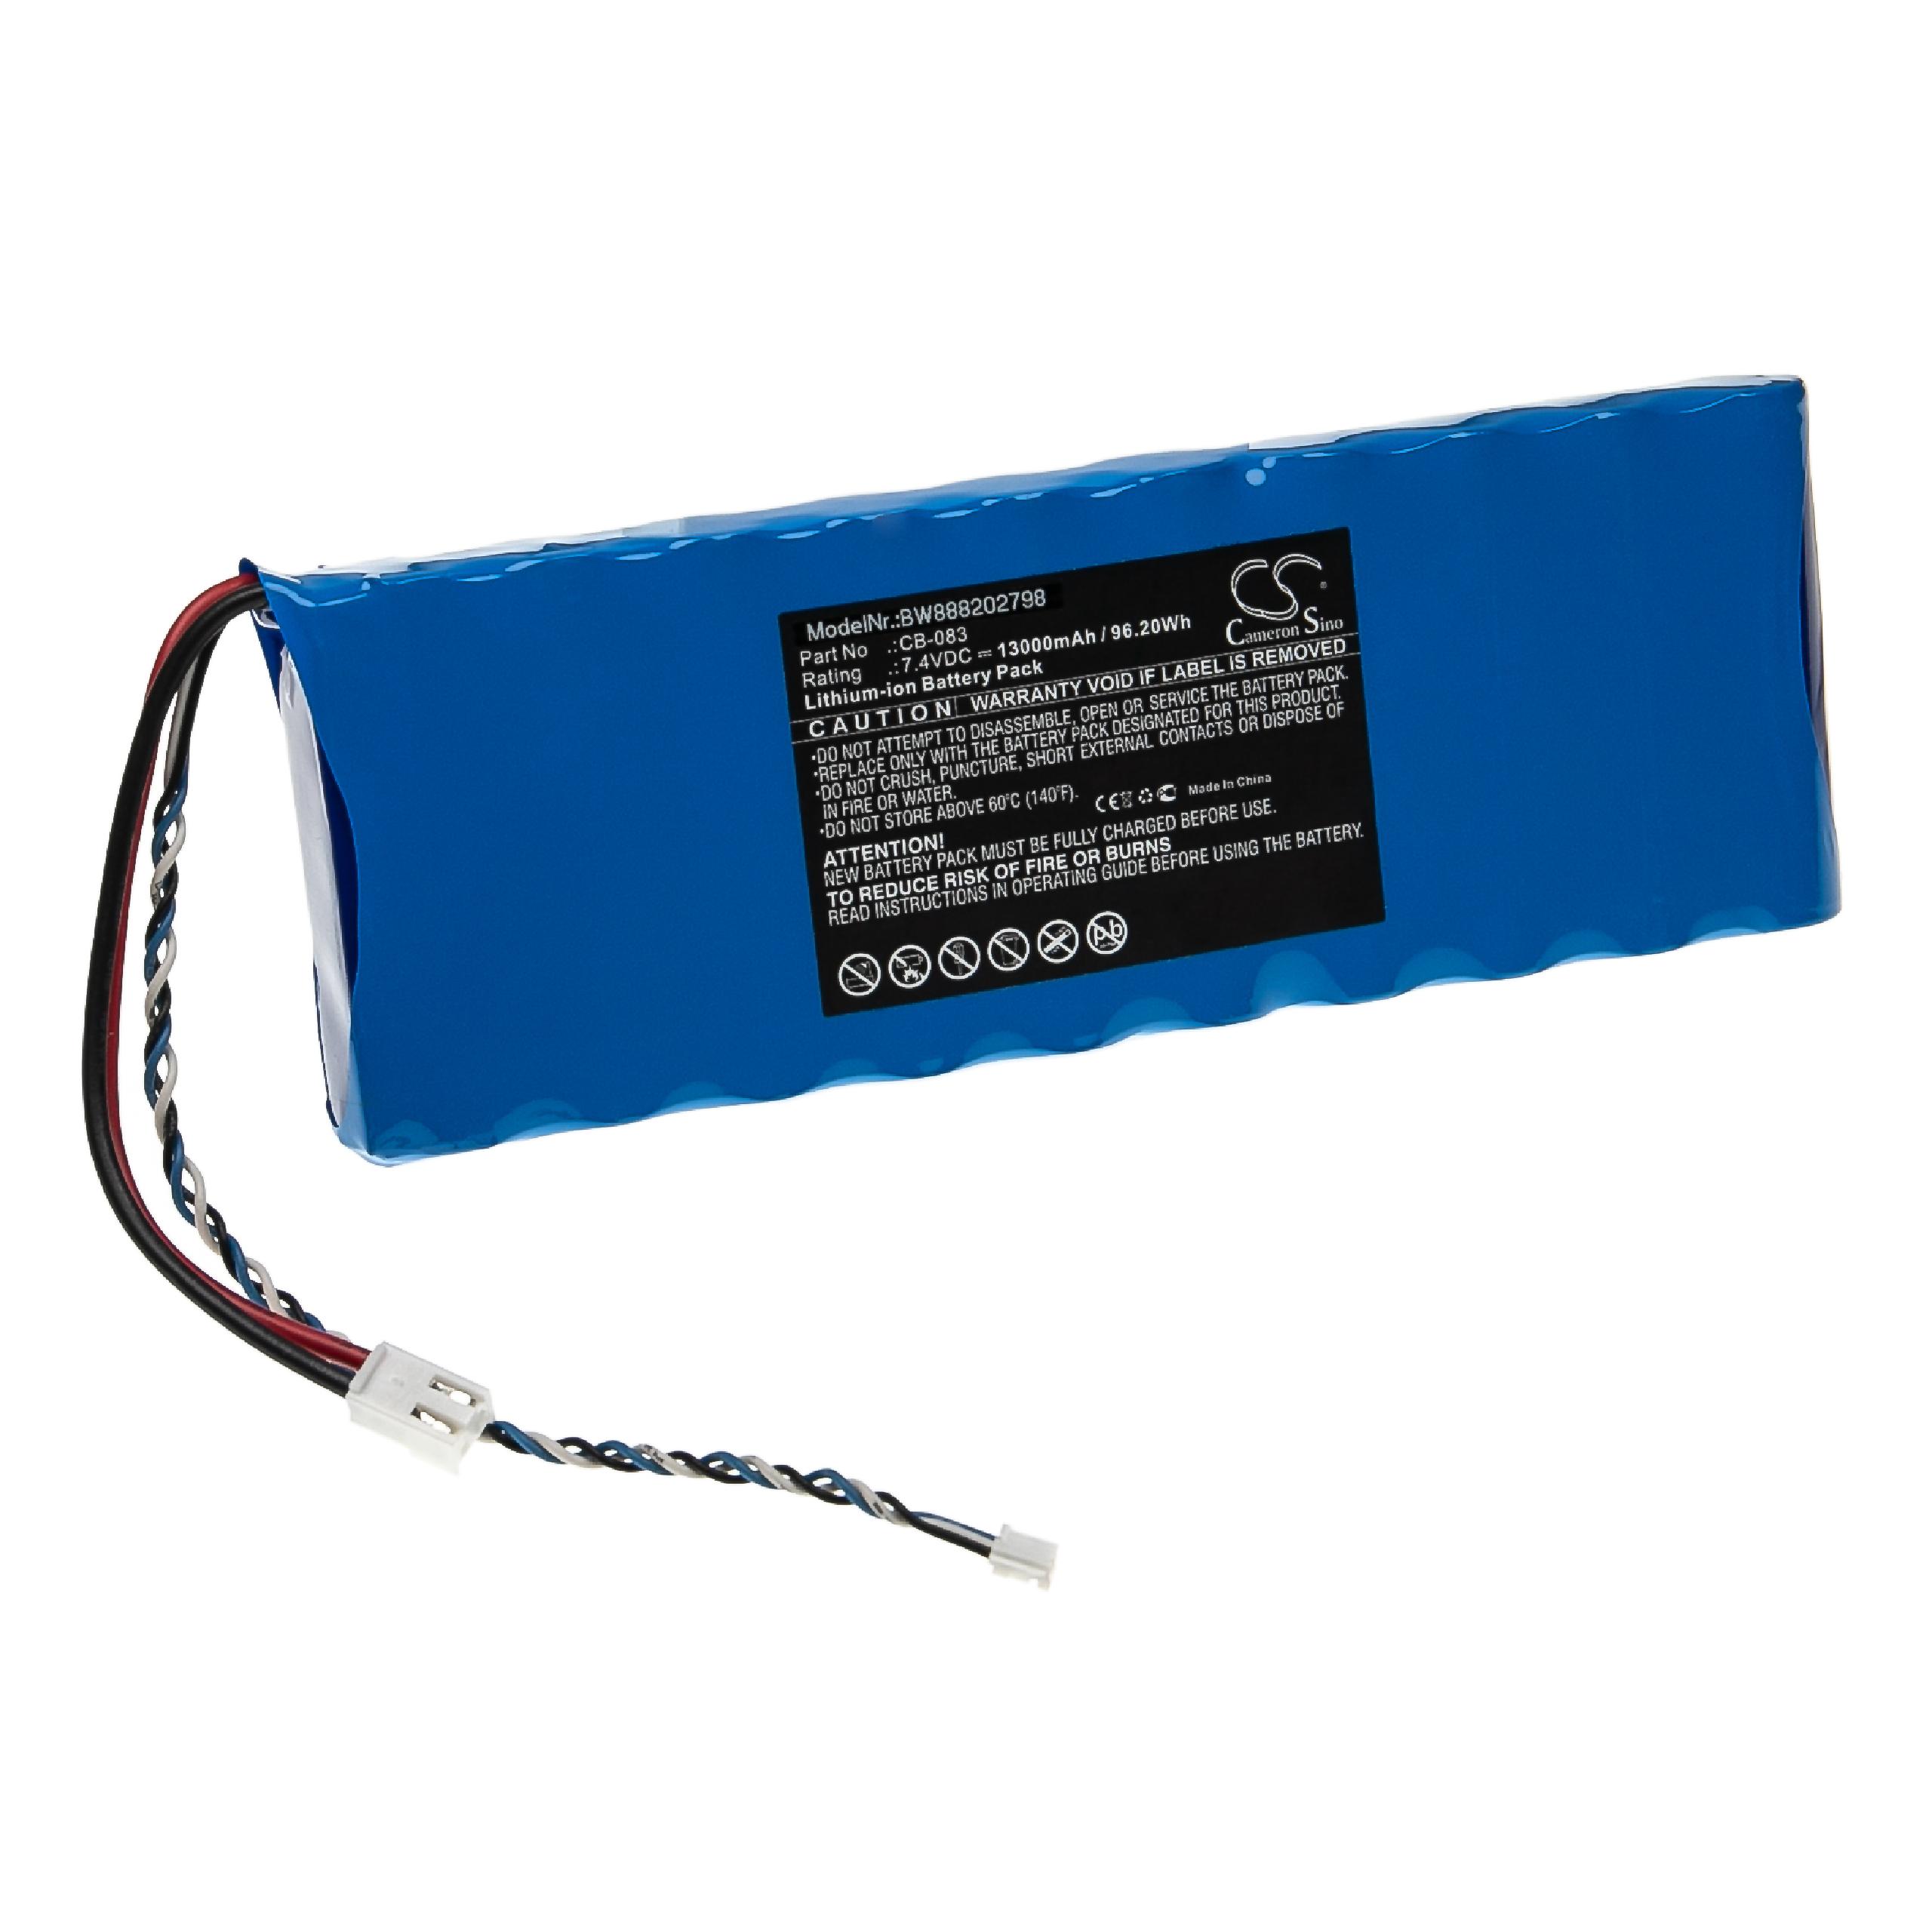 Batería reemplaza Promax CB-083 para dispositivo medición Promax - 13000 mAh 7,4 V Li-Ion